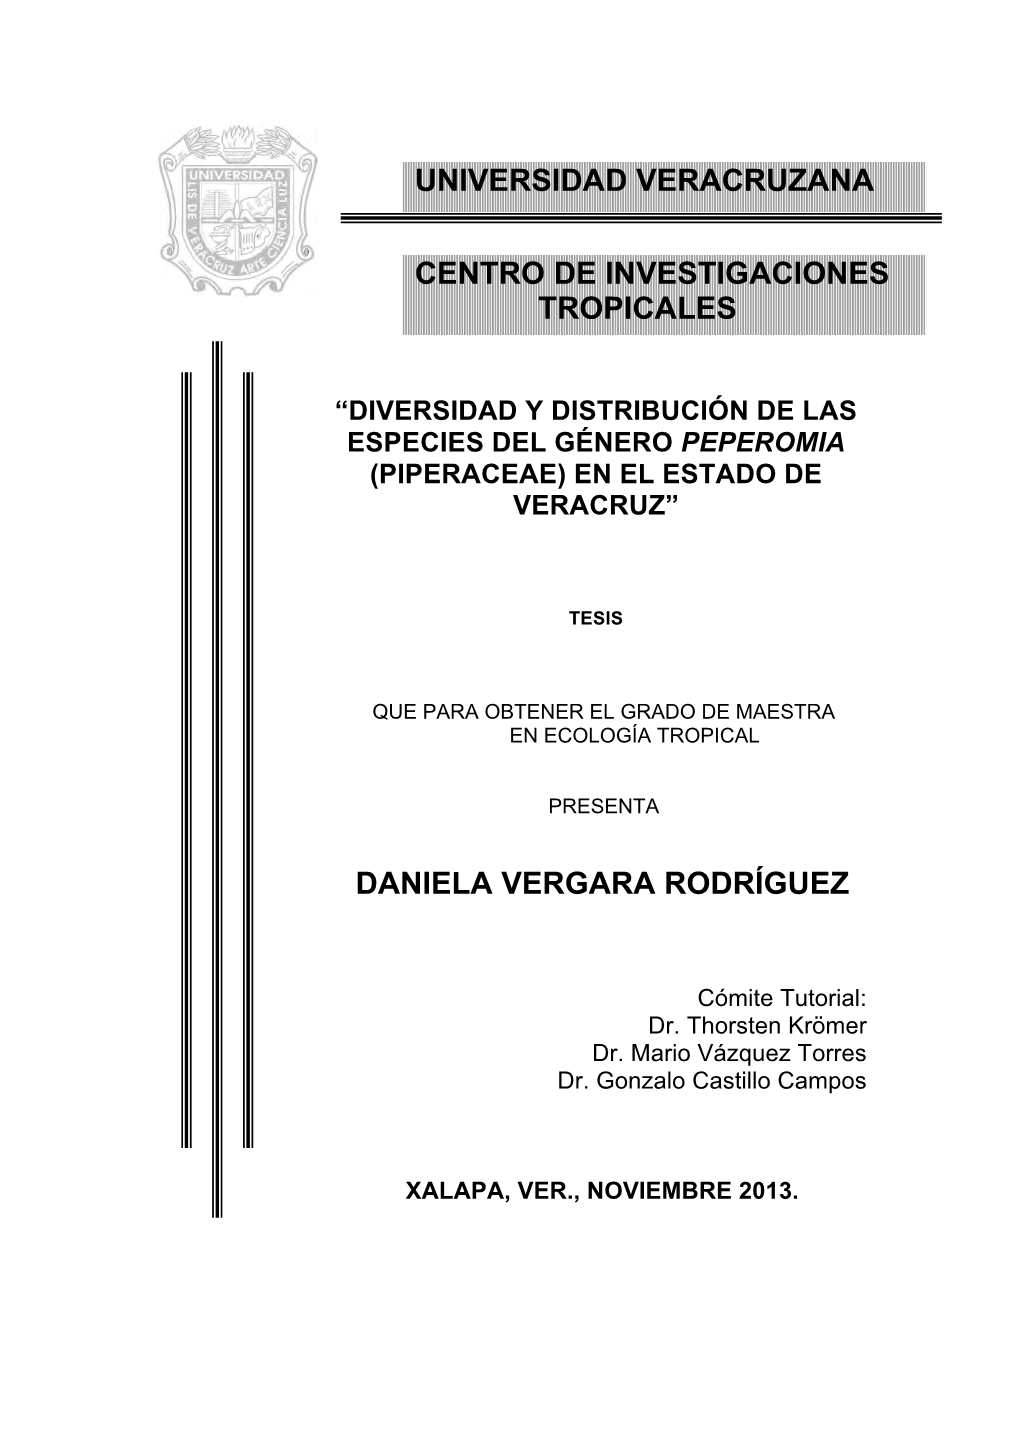 Diversidad Y Distribución De Las Especies Del Género Peperomia (Piperaceae) En El Estado De Veracruz”